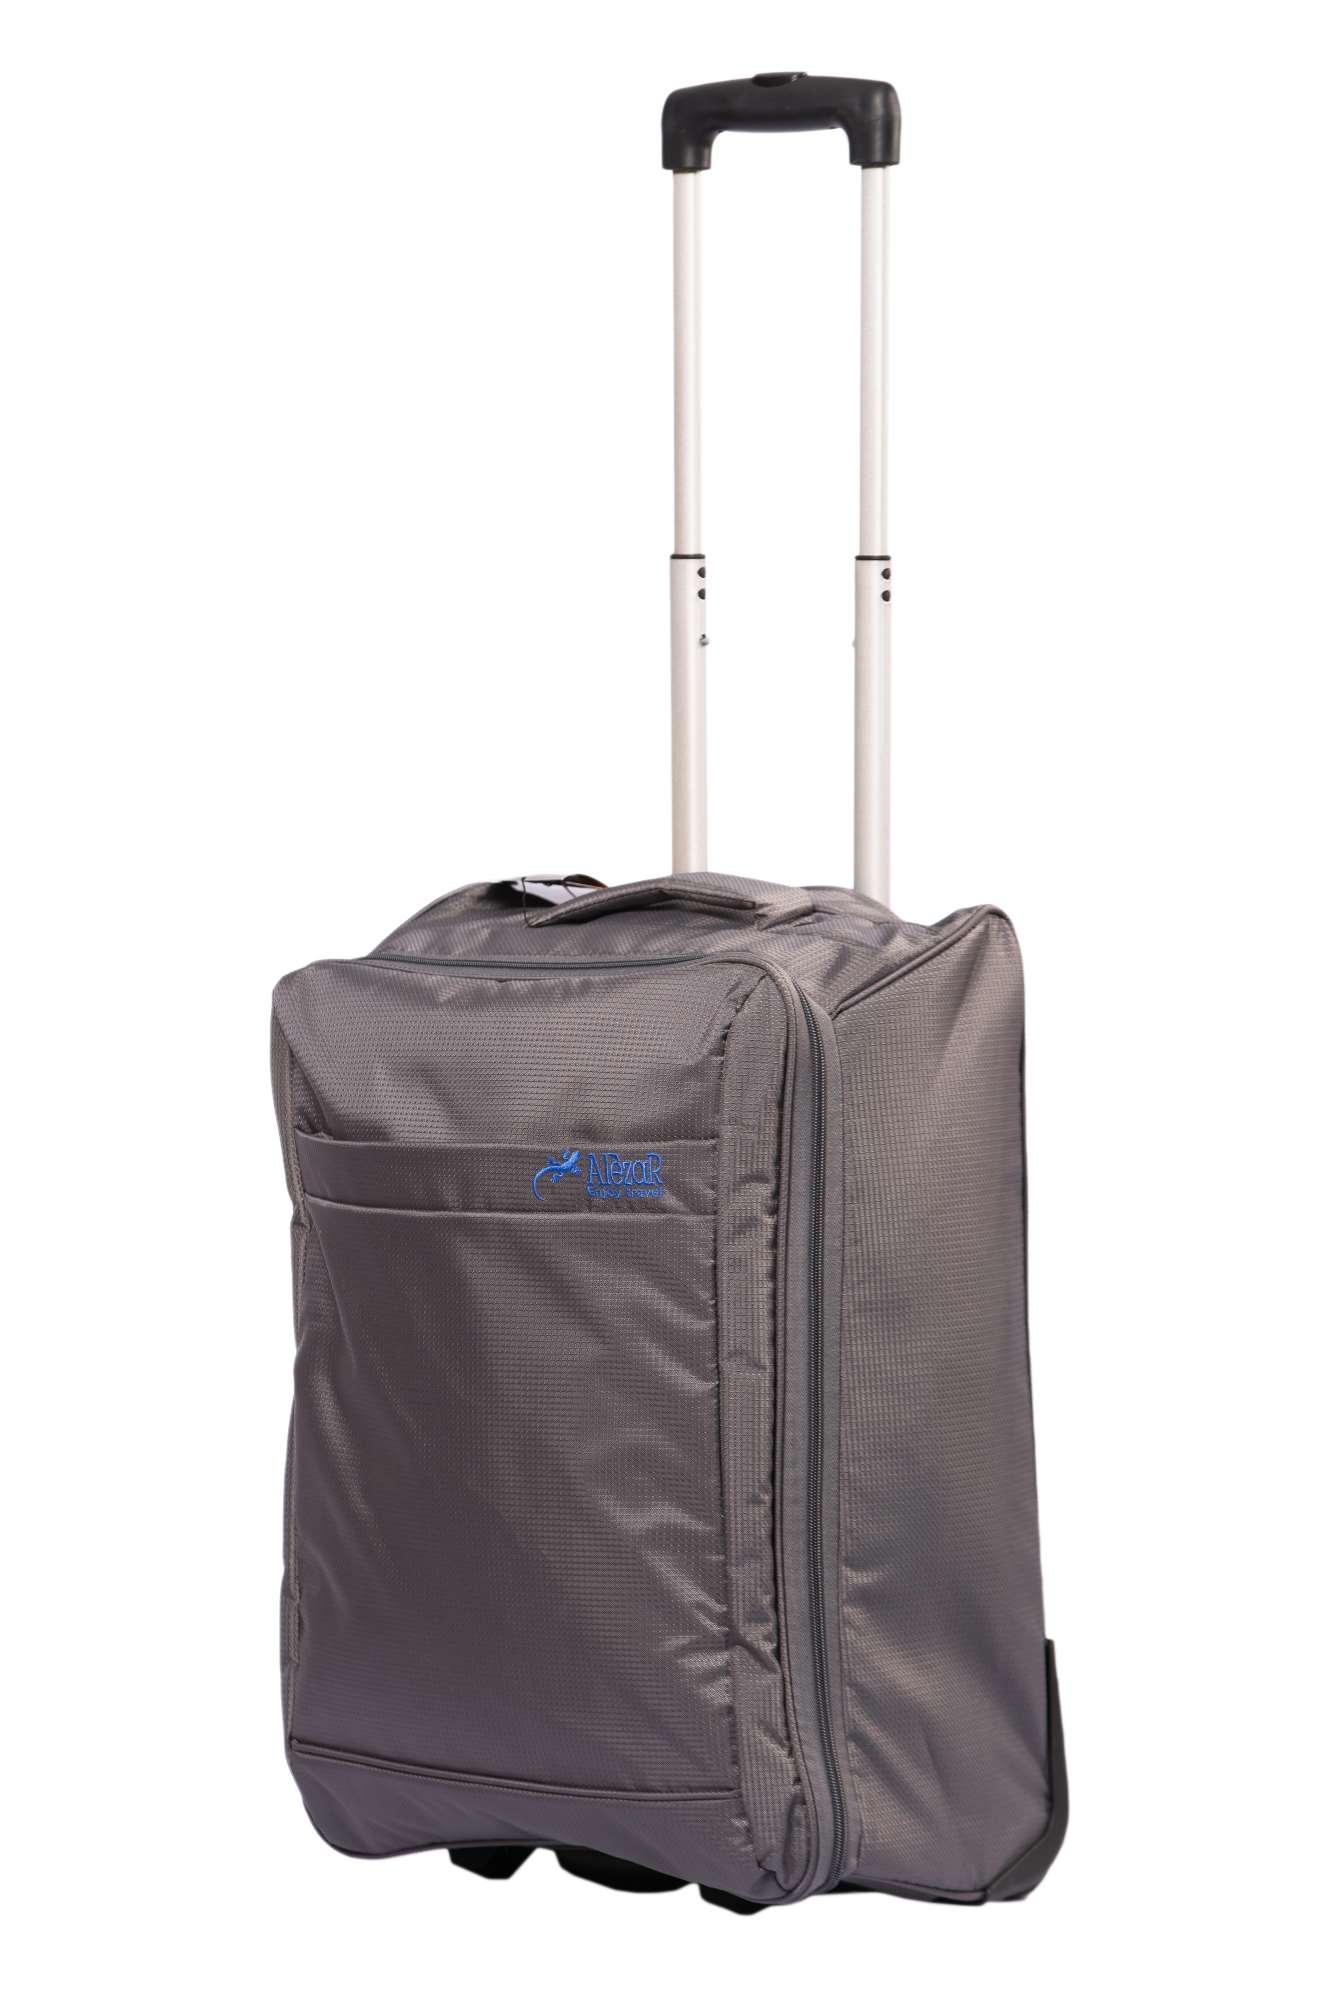 Alezar Cabin Size Travel Bag Gray 22"